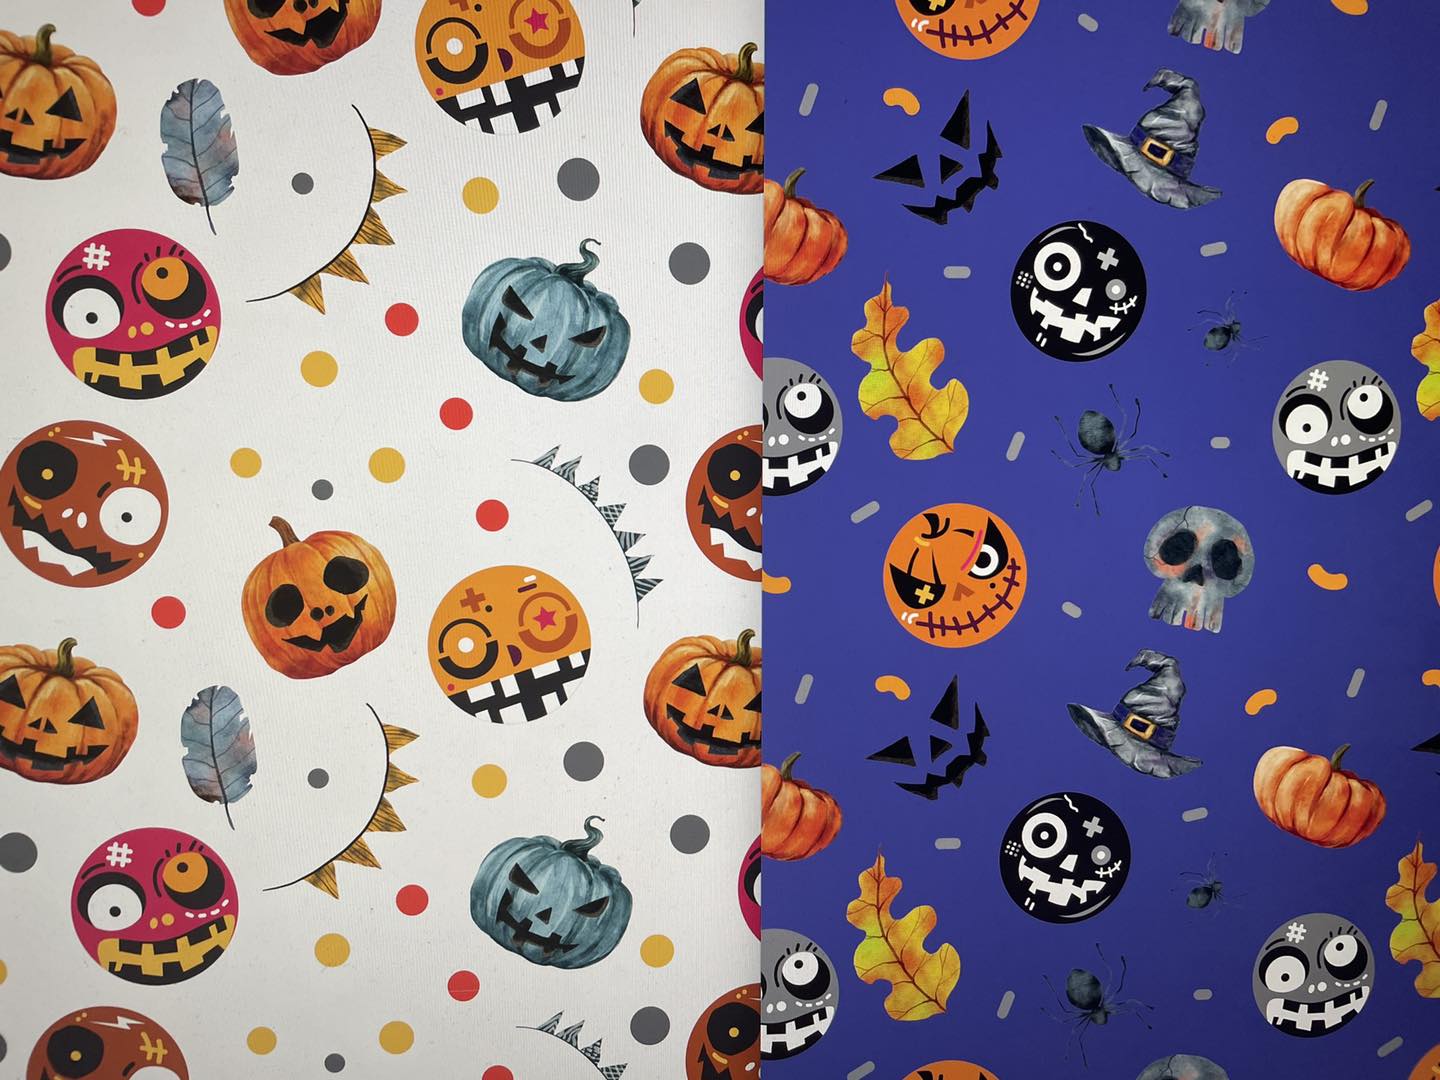 Cute Spooky HTV Bundle – 618 area vinyl